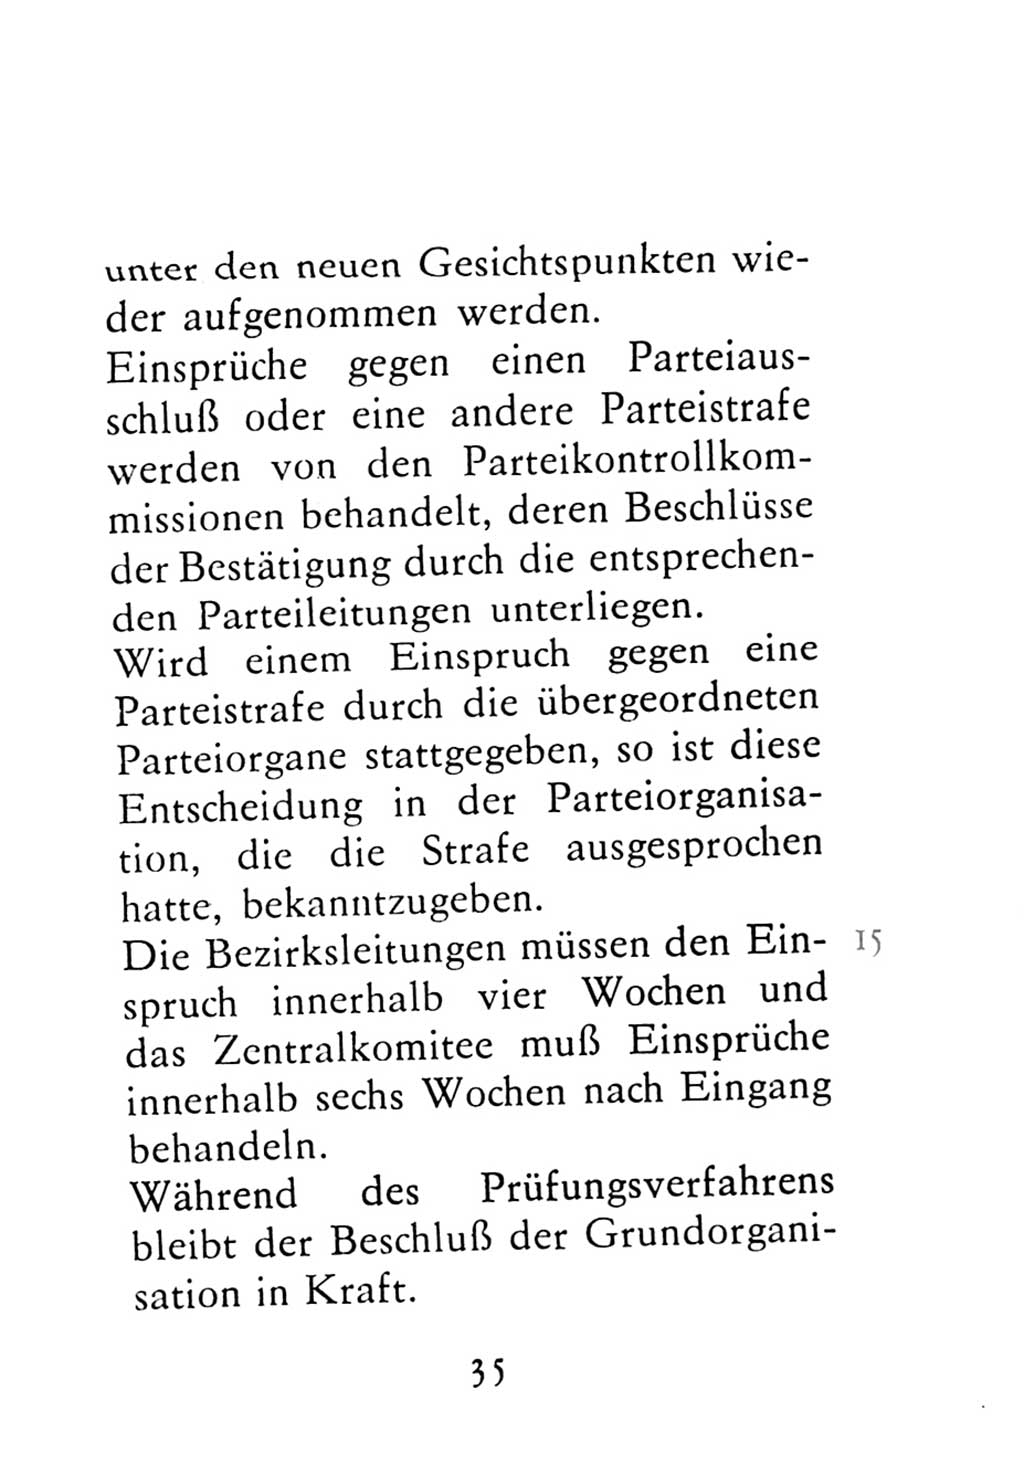 Statut der Sozialistischen Einheitspartei Deutschlands (SED) 1976, Seite 35 (St. SED DDR 1976, S. 35)